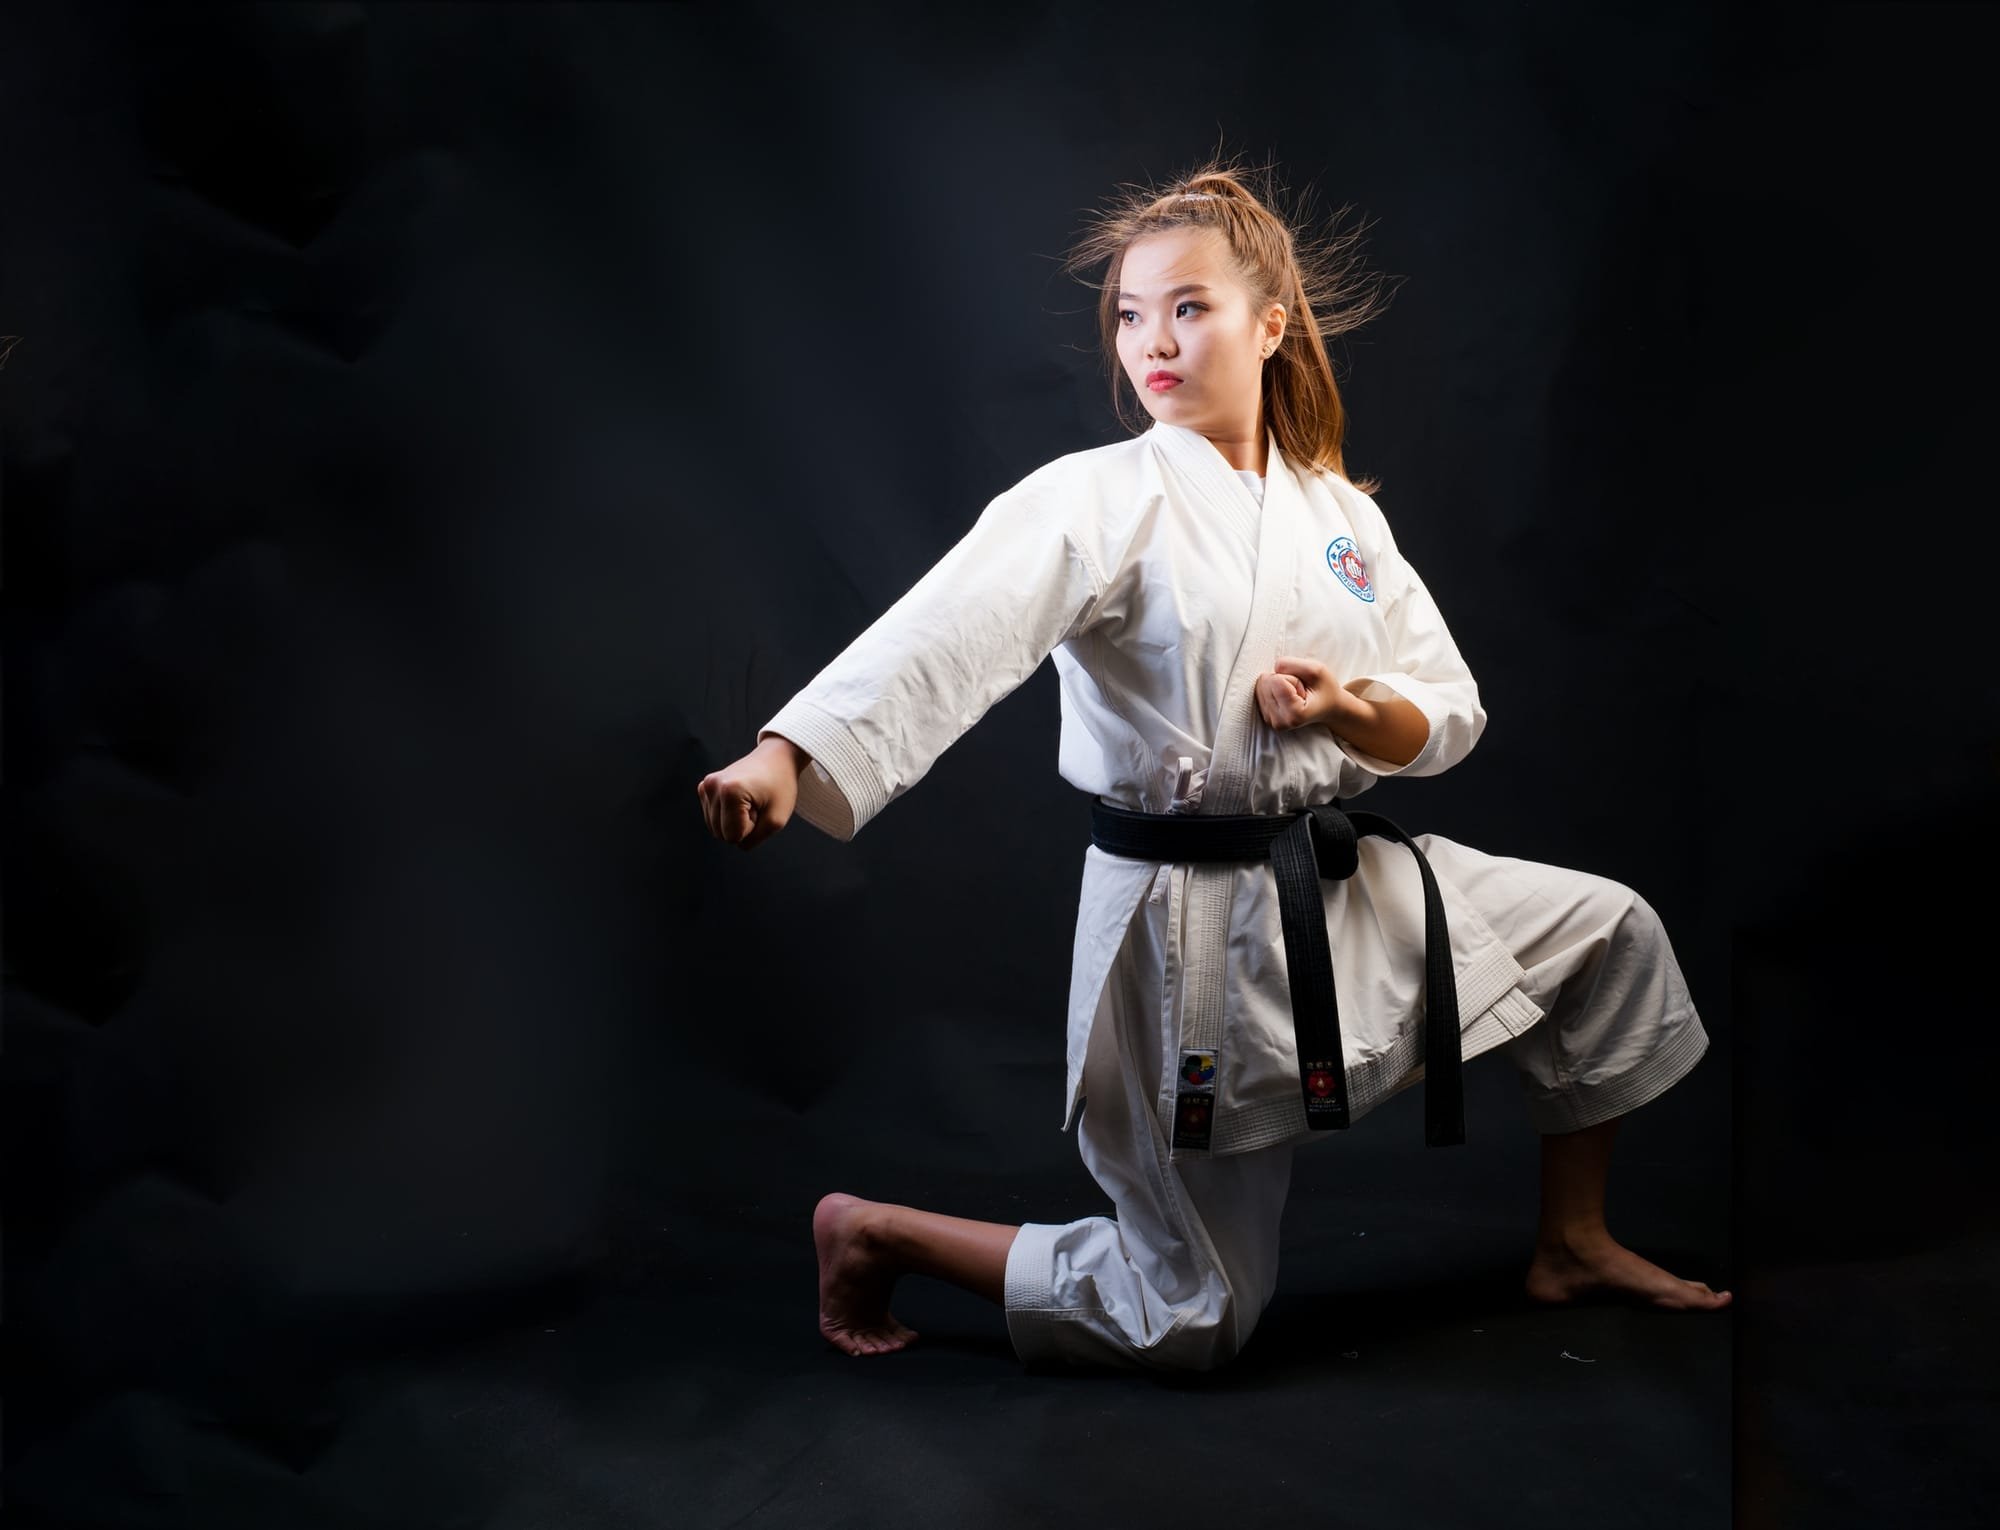 Shotokan Karate stances used in KSTSK